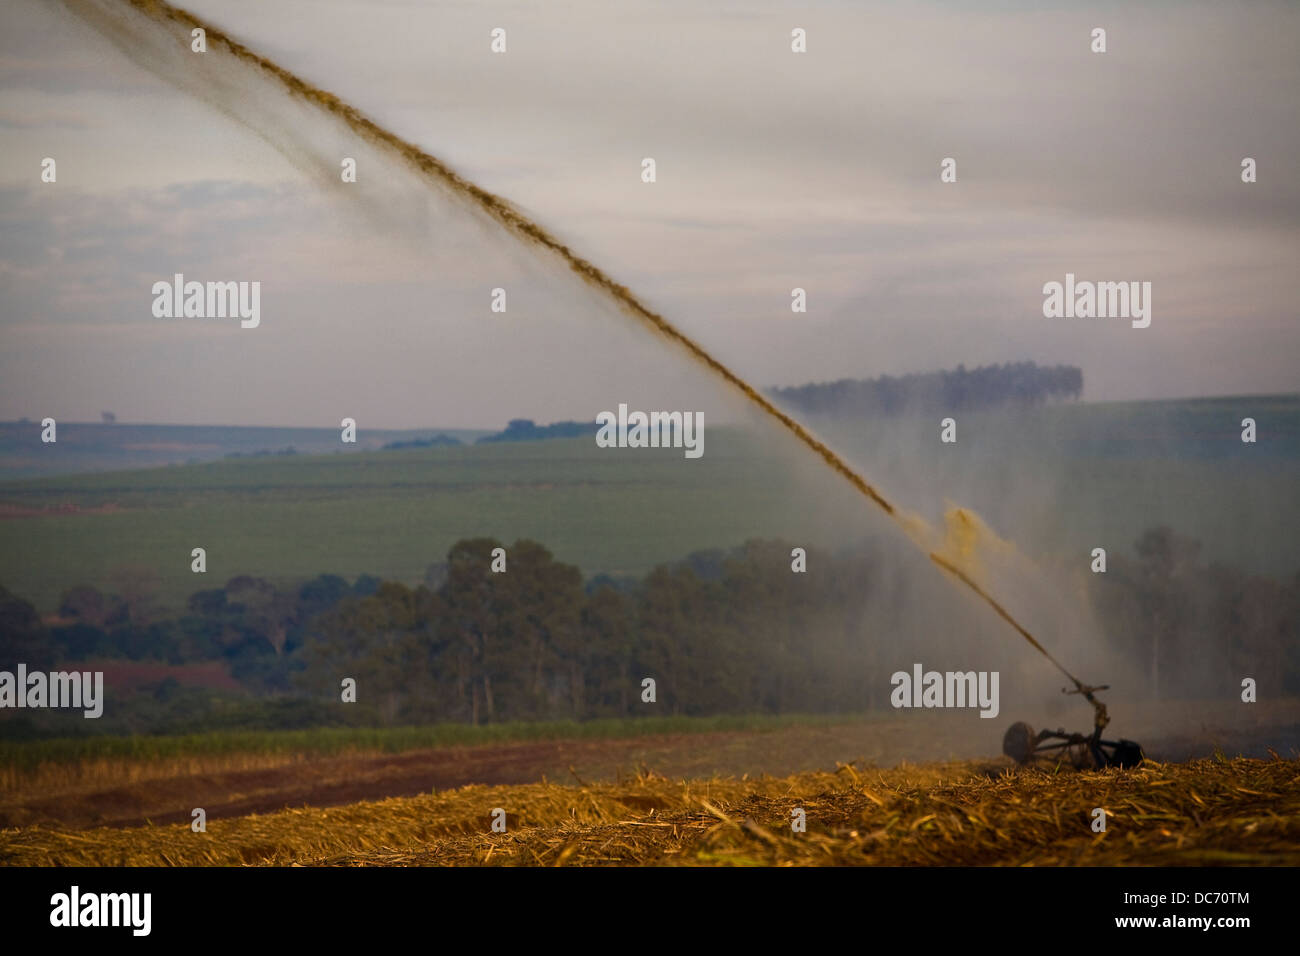 Düngung des vor kurzem kultiviert Zuckerrohr-Feld mit Vinhoto, ein Nebenprodukt der Ethanol Industrieprozess Pumpe Maschine Stockfoto